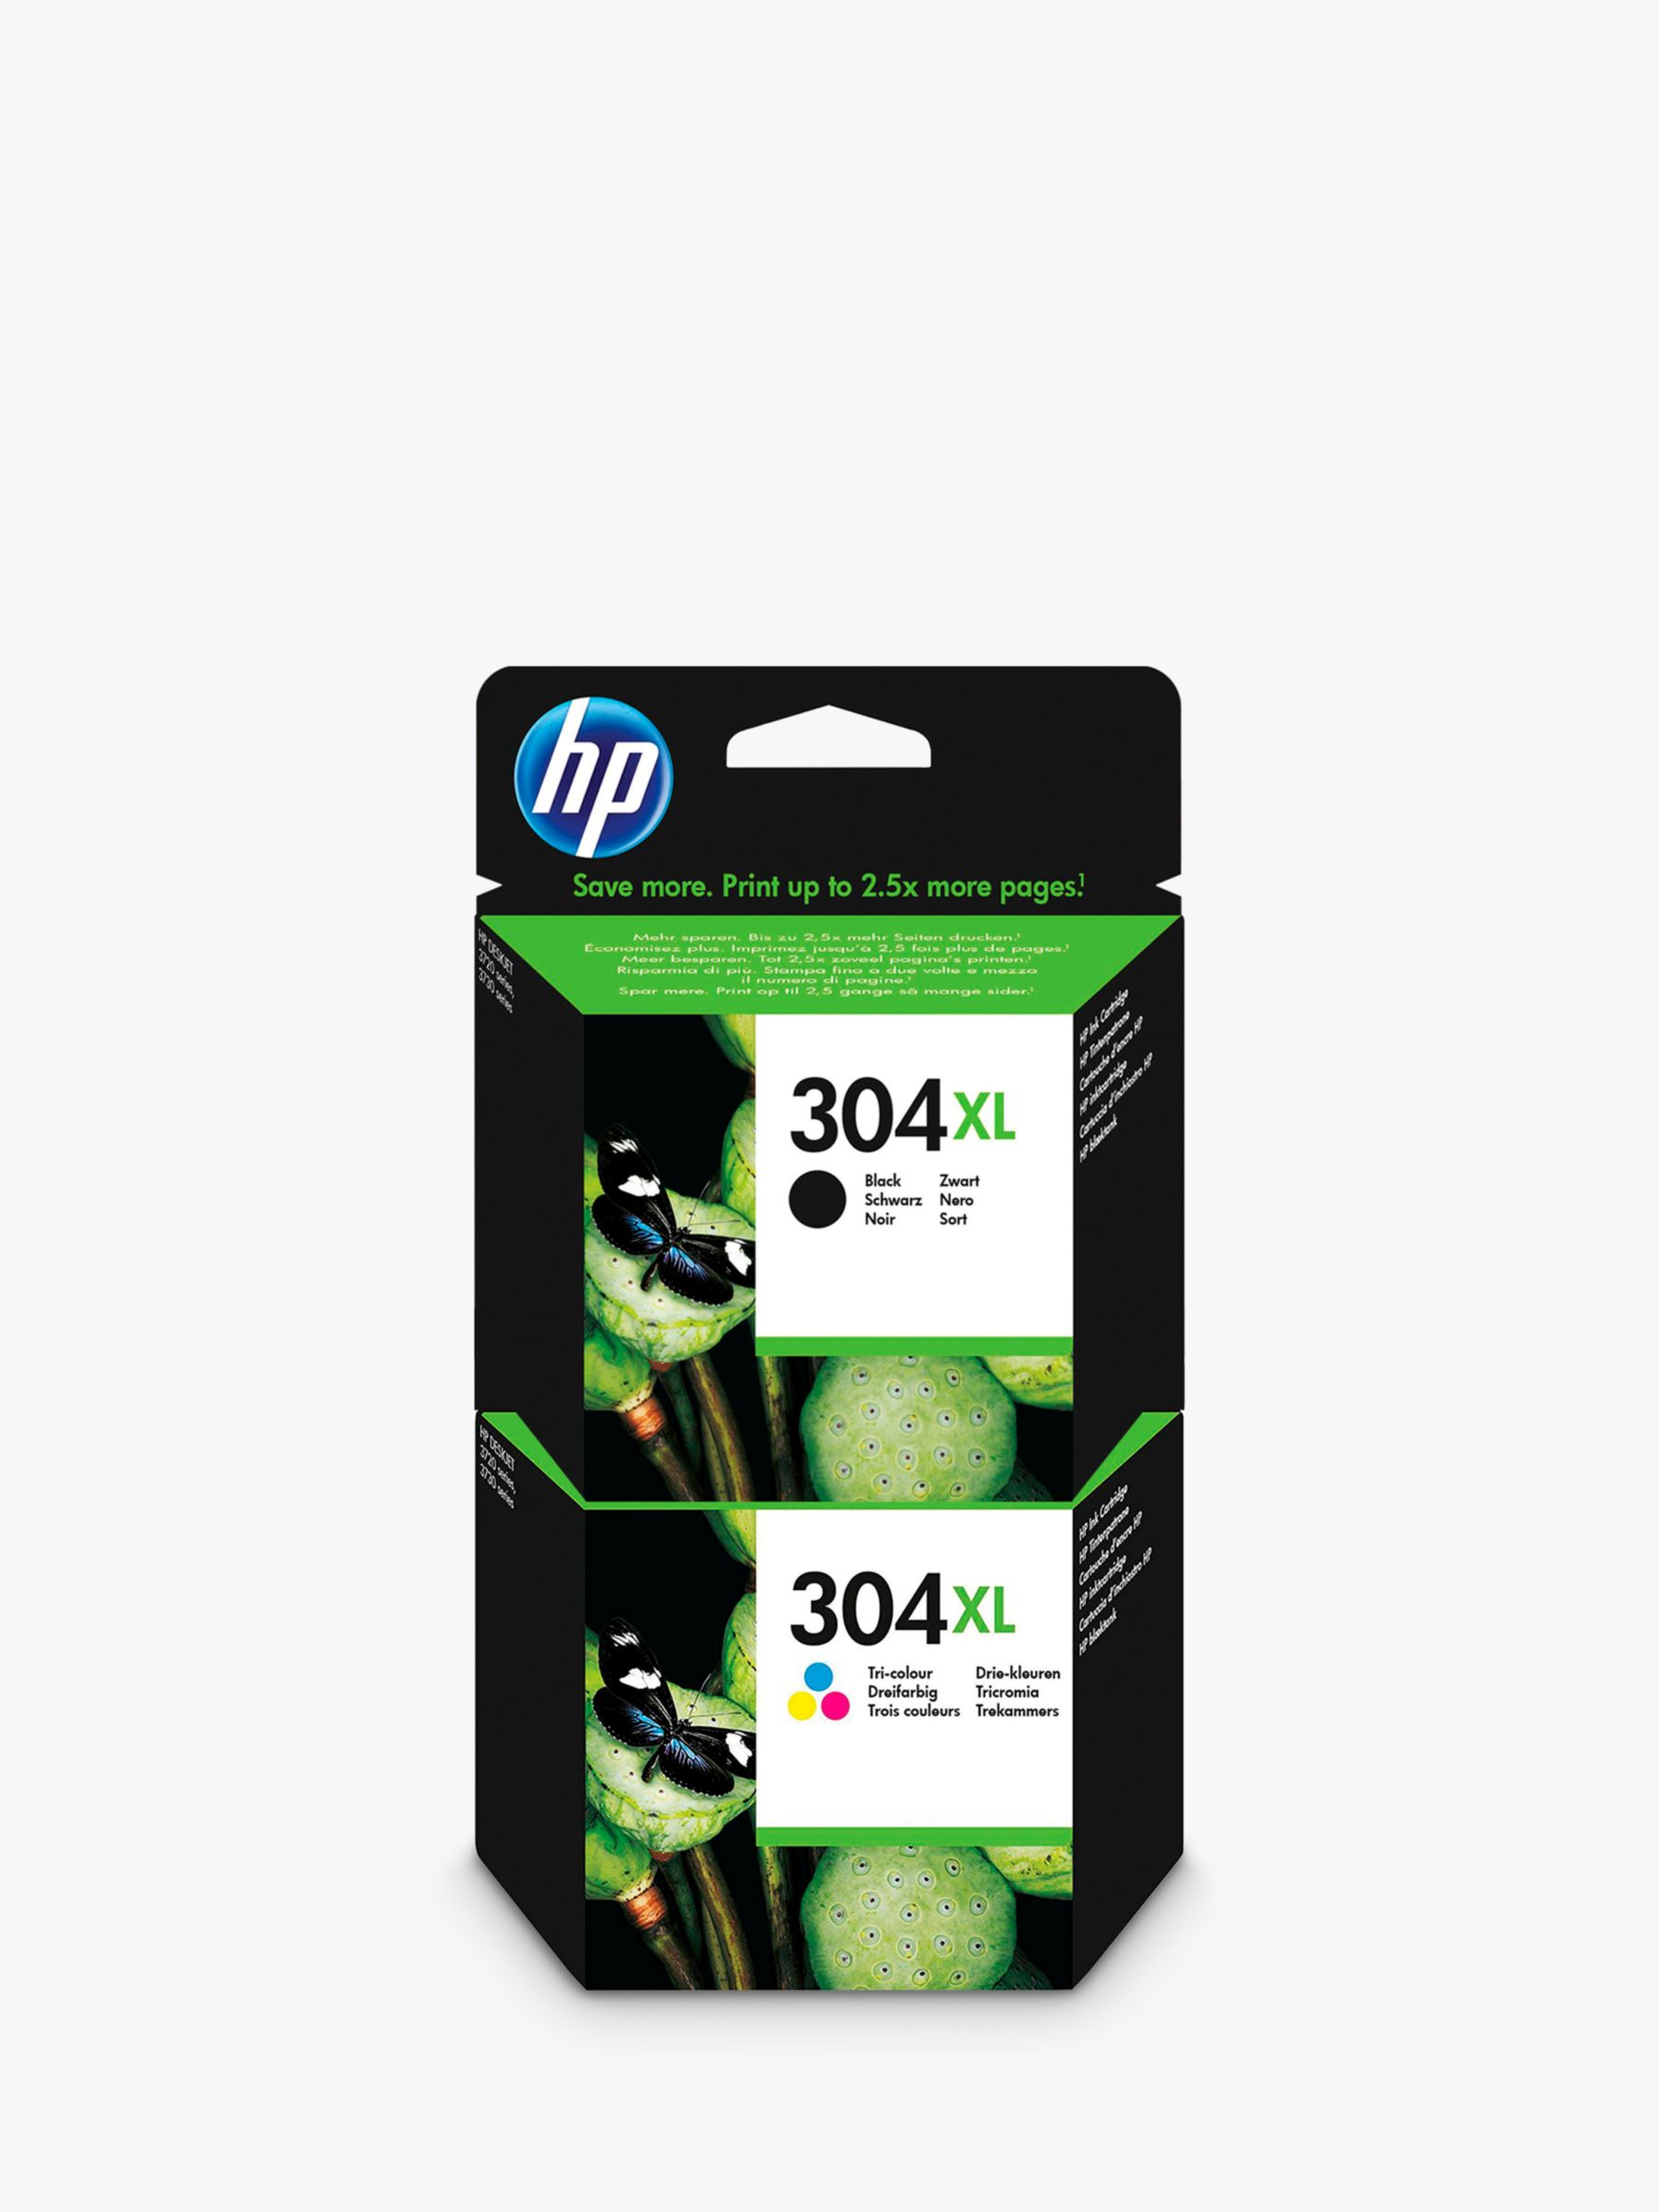 2 Cartouches compatibles HP 304XL - 1 Noir + 1 Couleurs